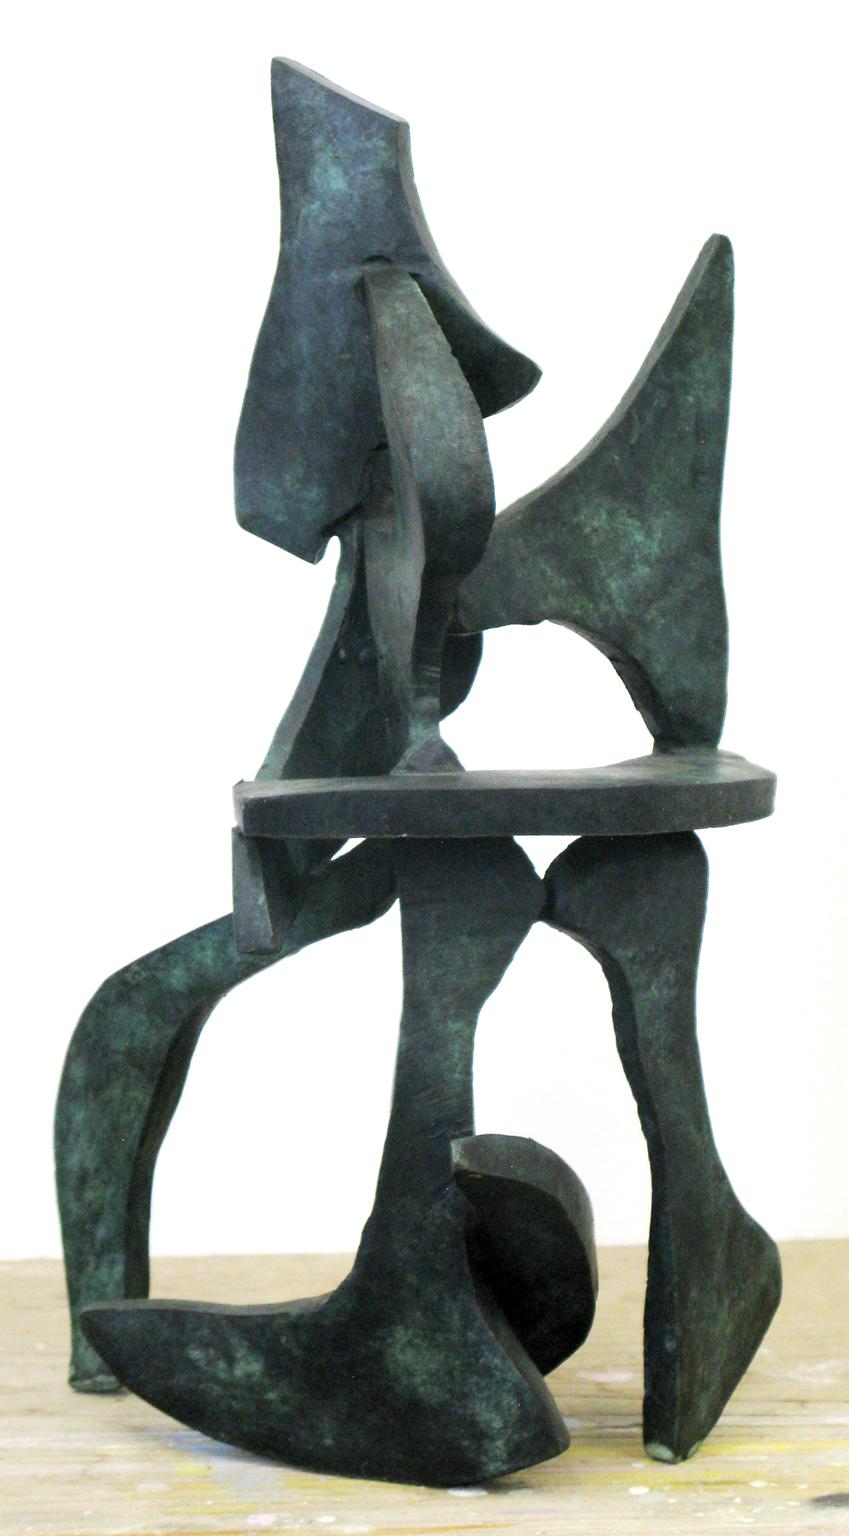 "Lyra Series 27" par Bill Barrett
Bronze coulé

Bill Barrett est considéré comme une figure centrale de la deuxième génération de sculpteurs américains sur métal et est internationalement connu pour ses sculptures abstraites en acier, aluminium et